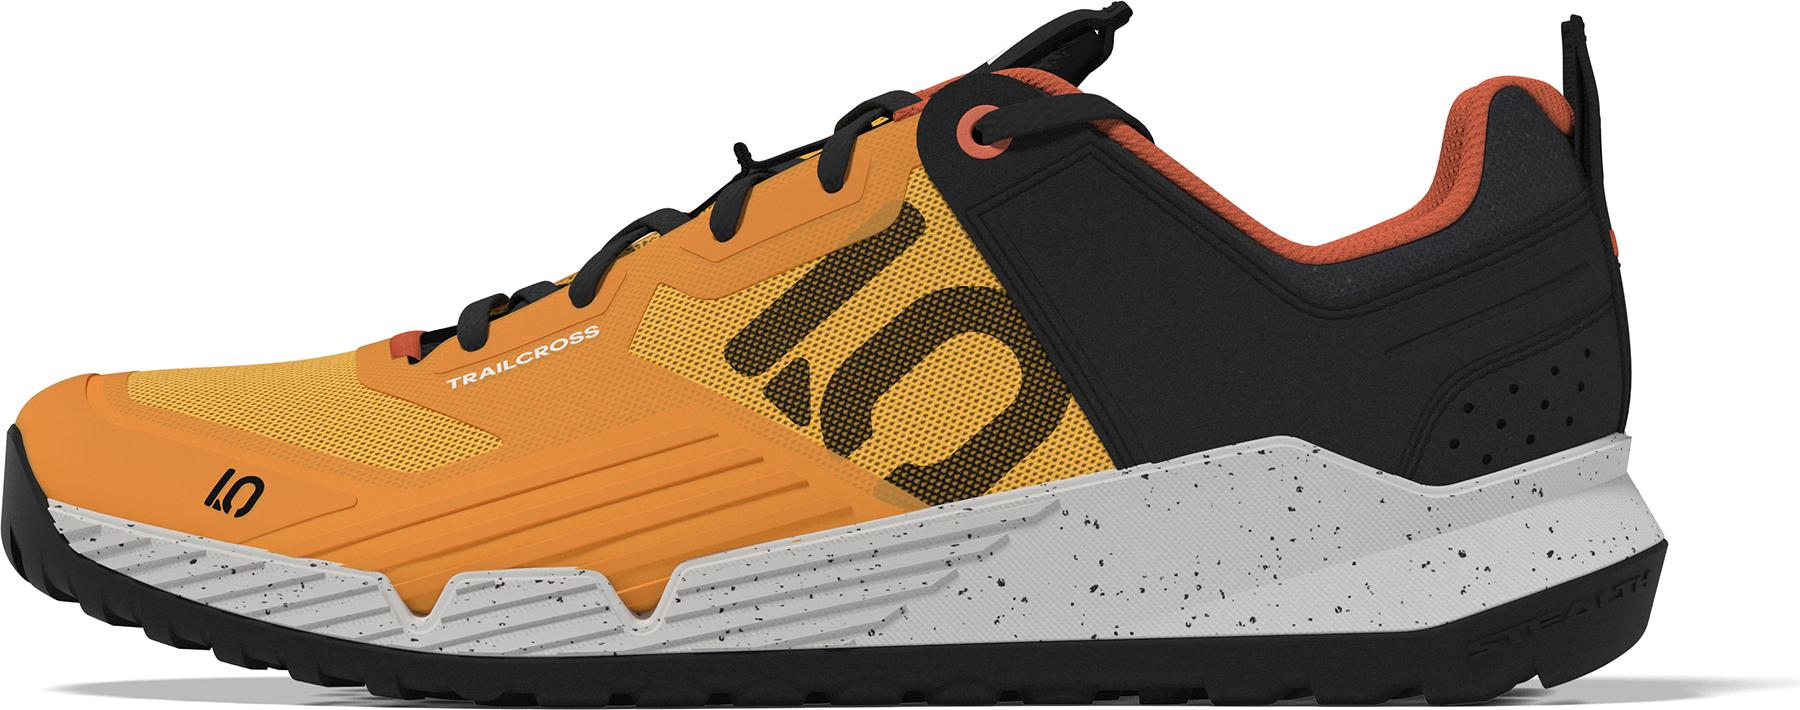 Five Ten Trailcross Xt Mtb Shoes - Solar Gold/core Black/impact Orange